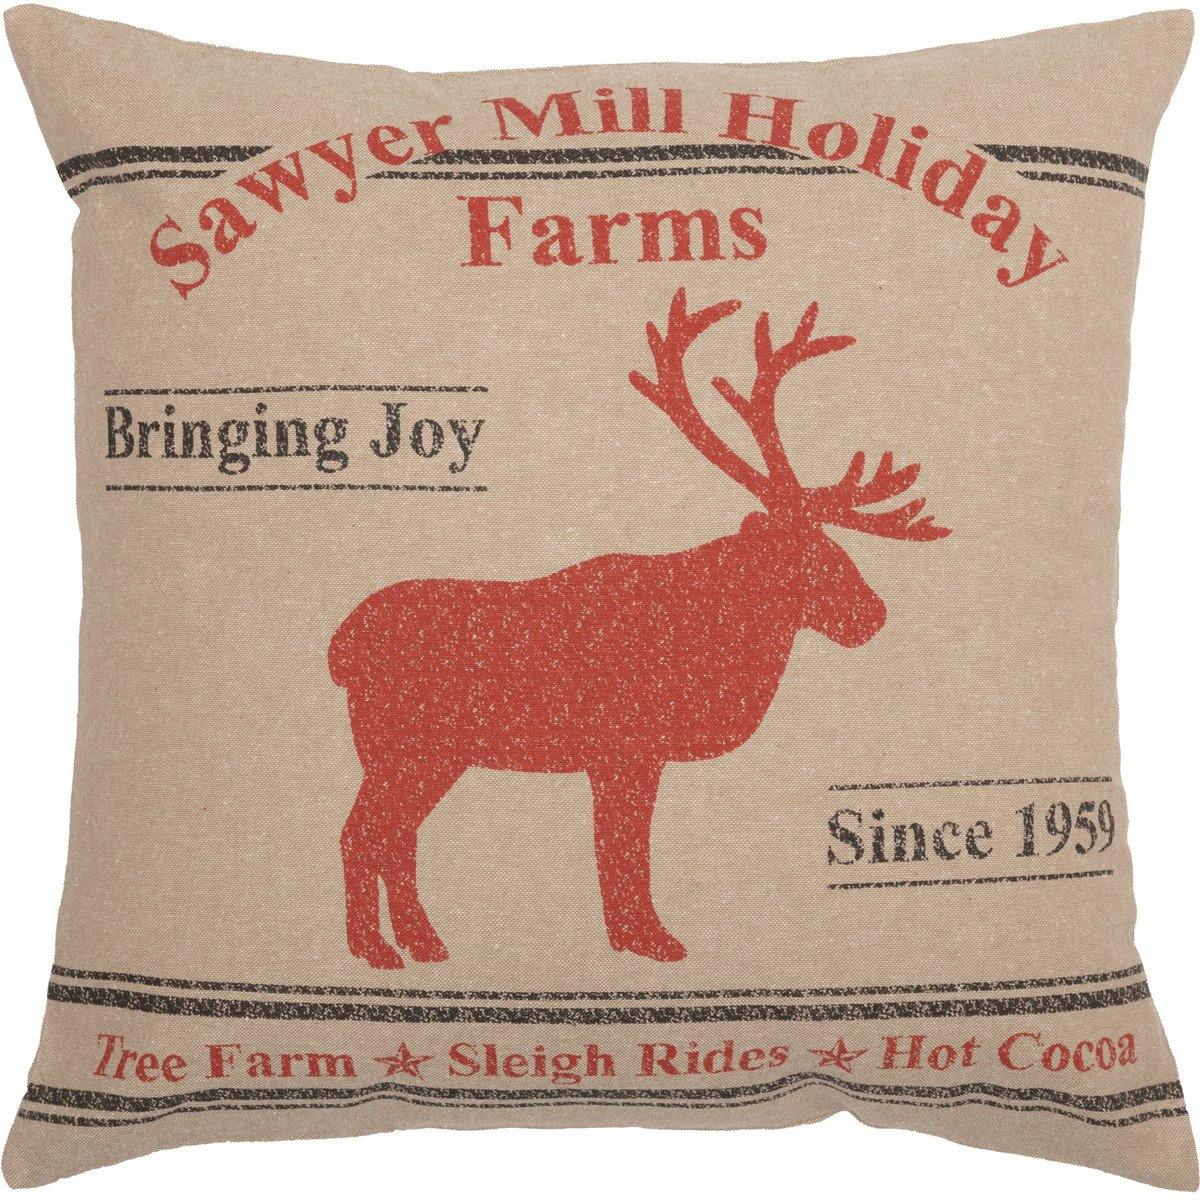 Sawyer Mill Reindeer Pillow 18"x18" - The Fox Decor